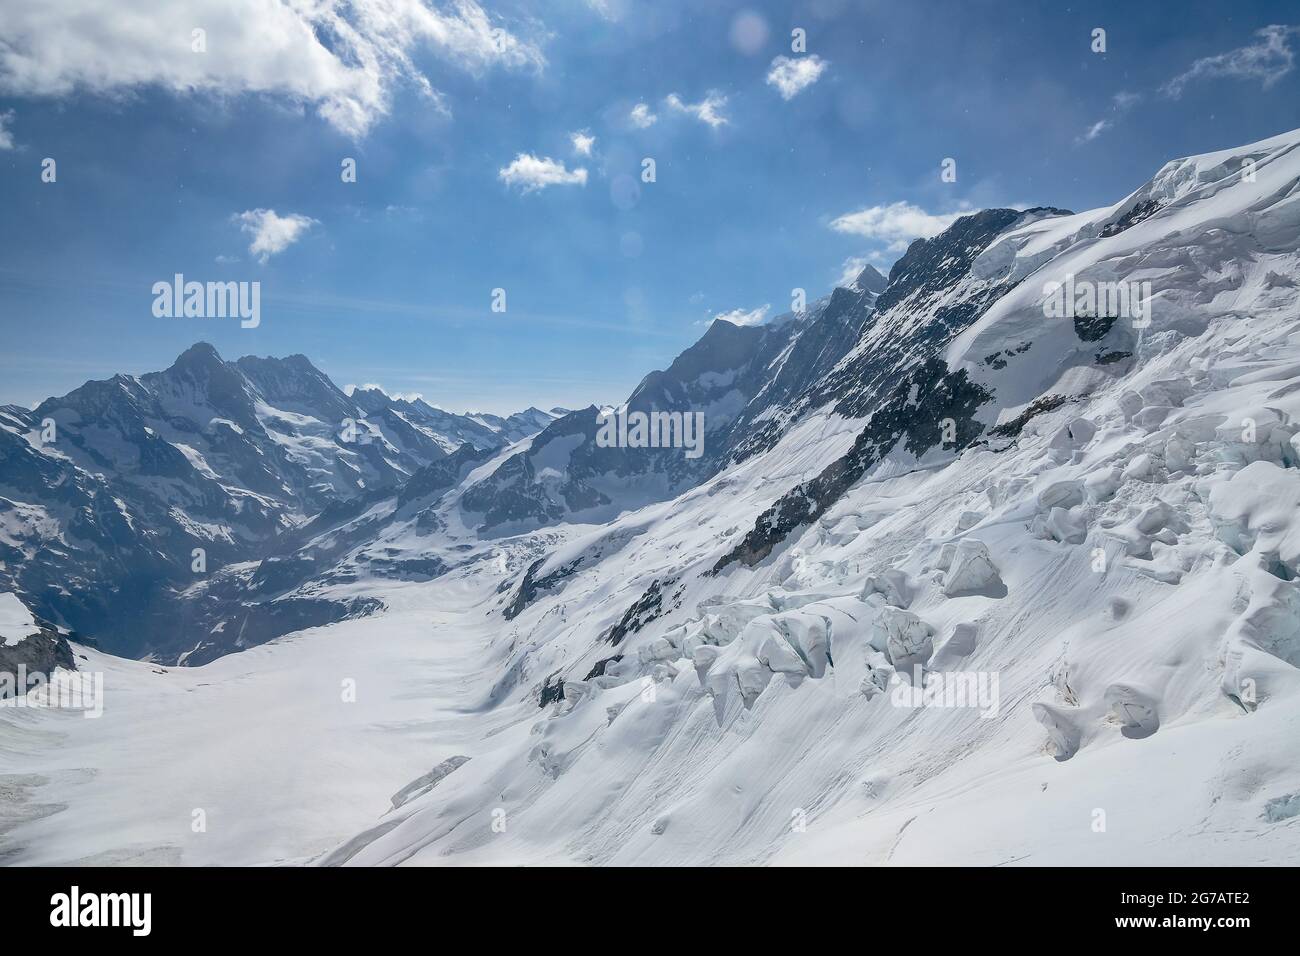 Blick durch das Fenster auf den Eismeergletscher von der Jungfraubahn in  der Schweiz - Schweizer Alpen Stockfotografie - Alamy